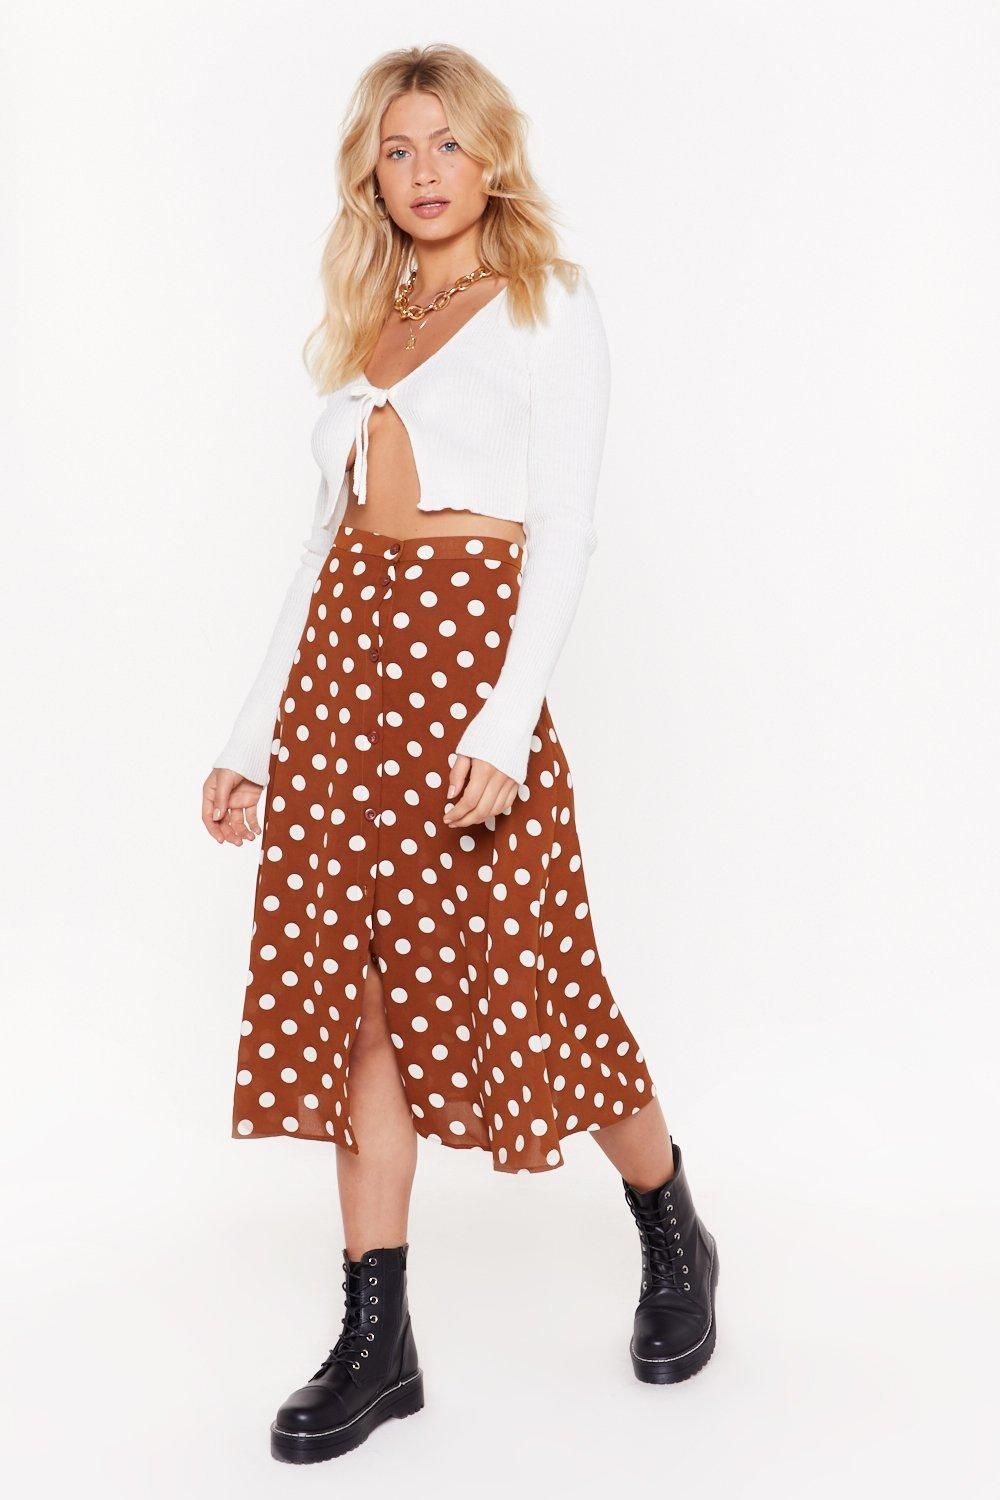 Spot On Polka Dot Skirt | NastyGal (US & CA)